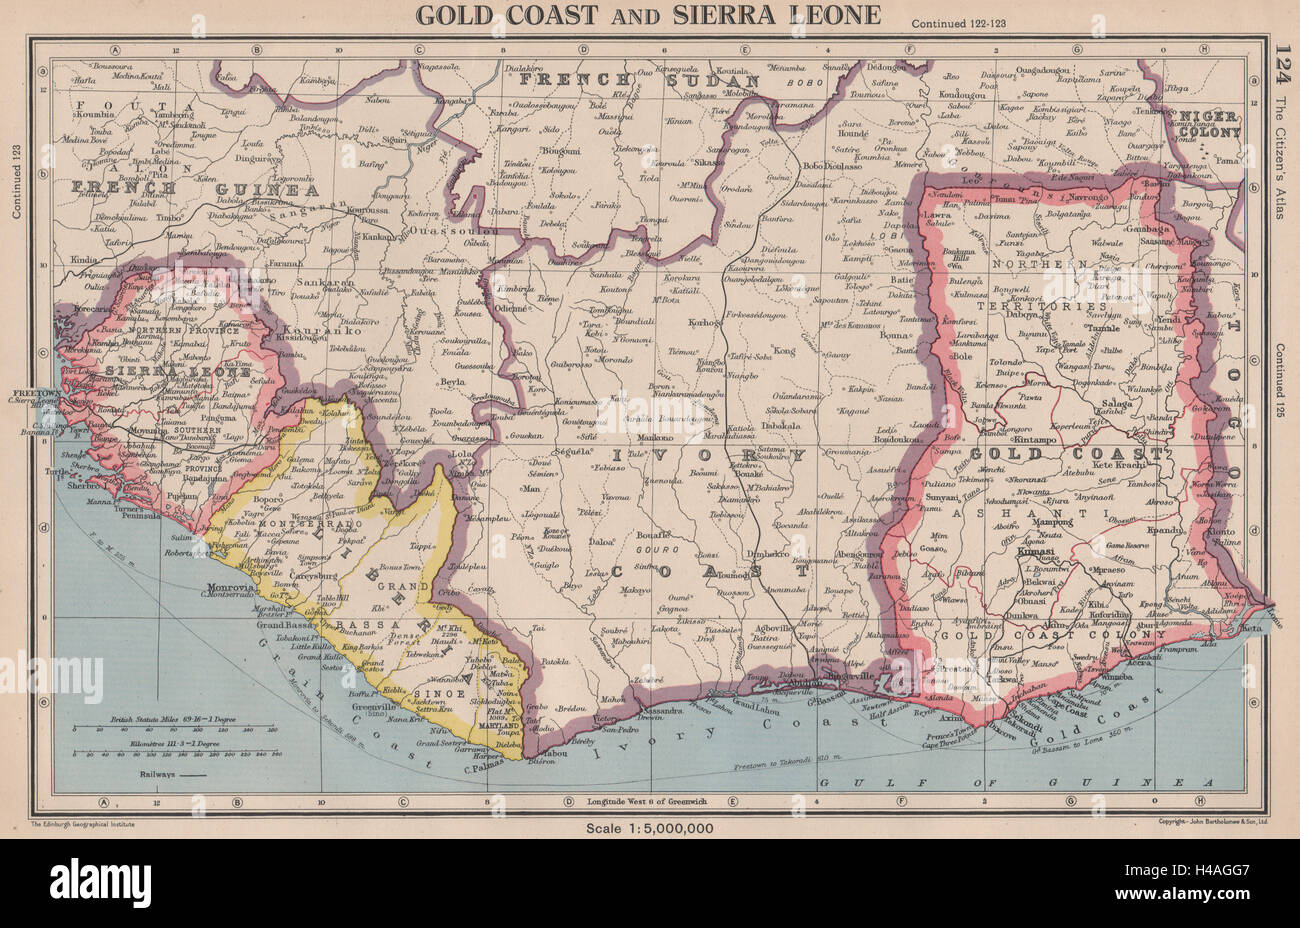 L'Afrique de l'Ouest. Gold Coast (Ghana) Sierra Leone Liberia Côte d'Ivoire 1944 map Banque D'Images